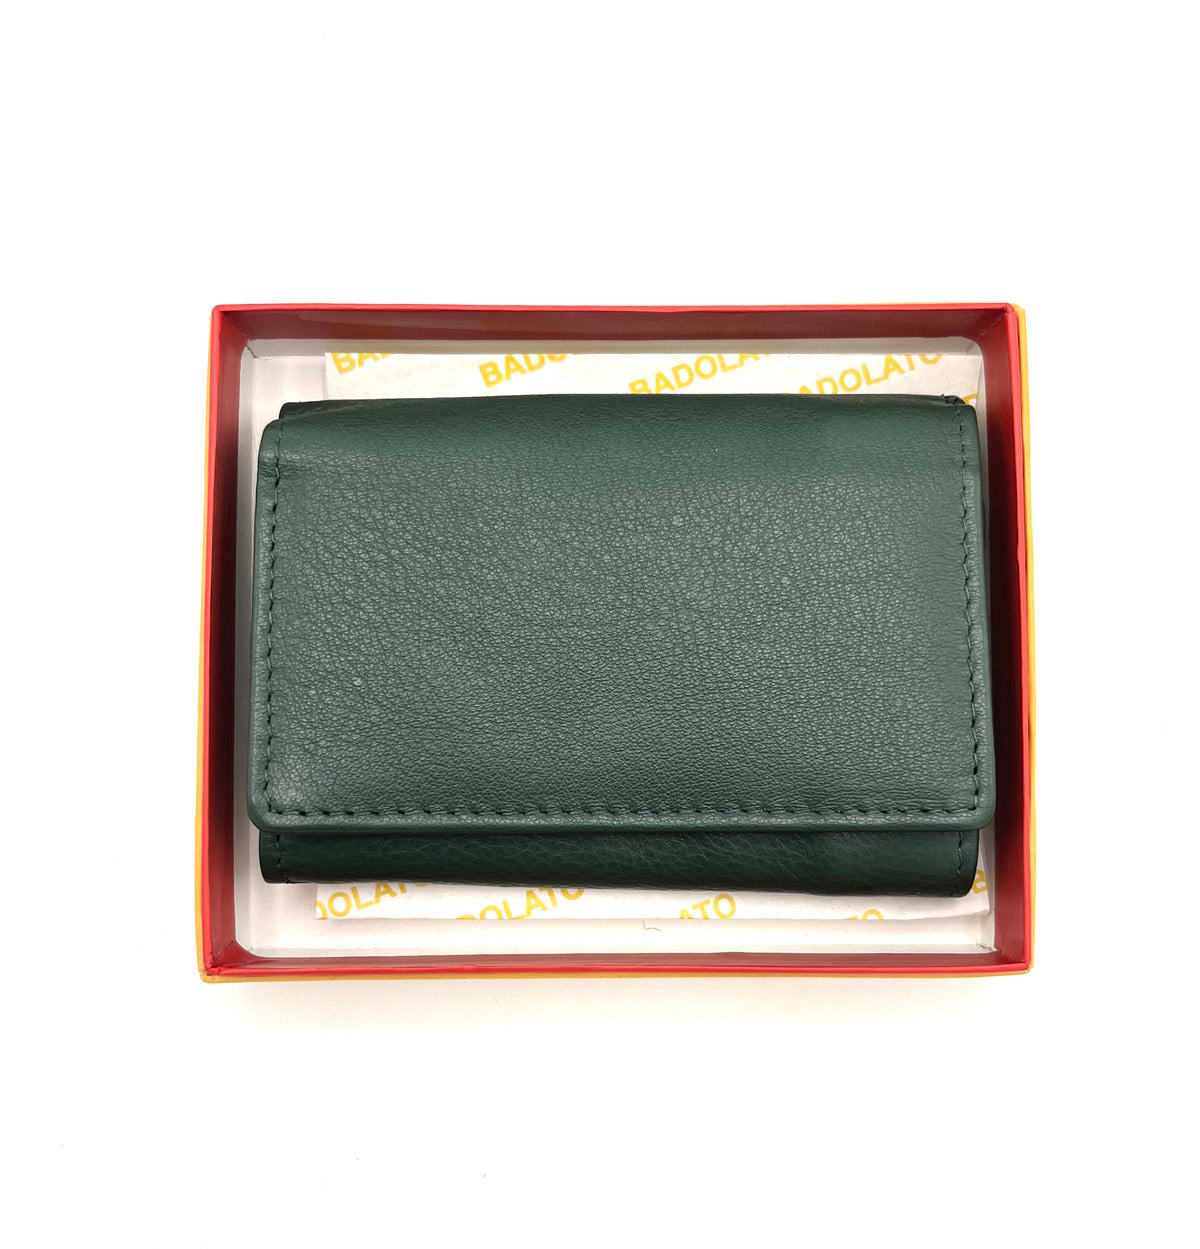 Genuine leather Wallet, art. BAG10